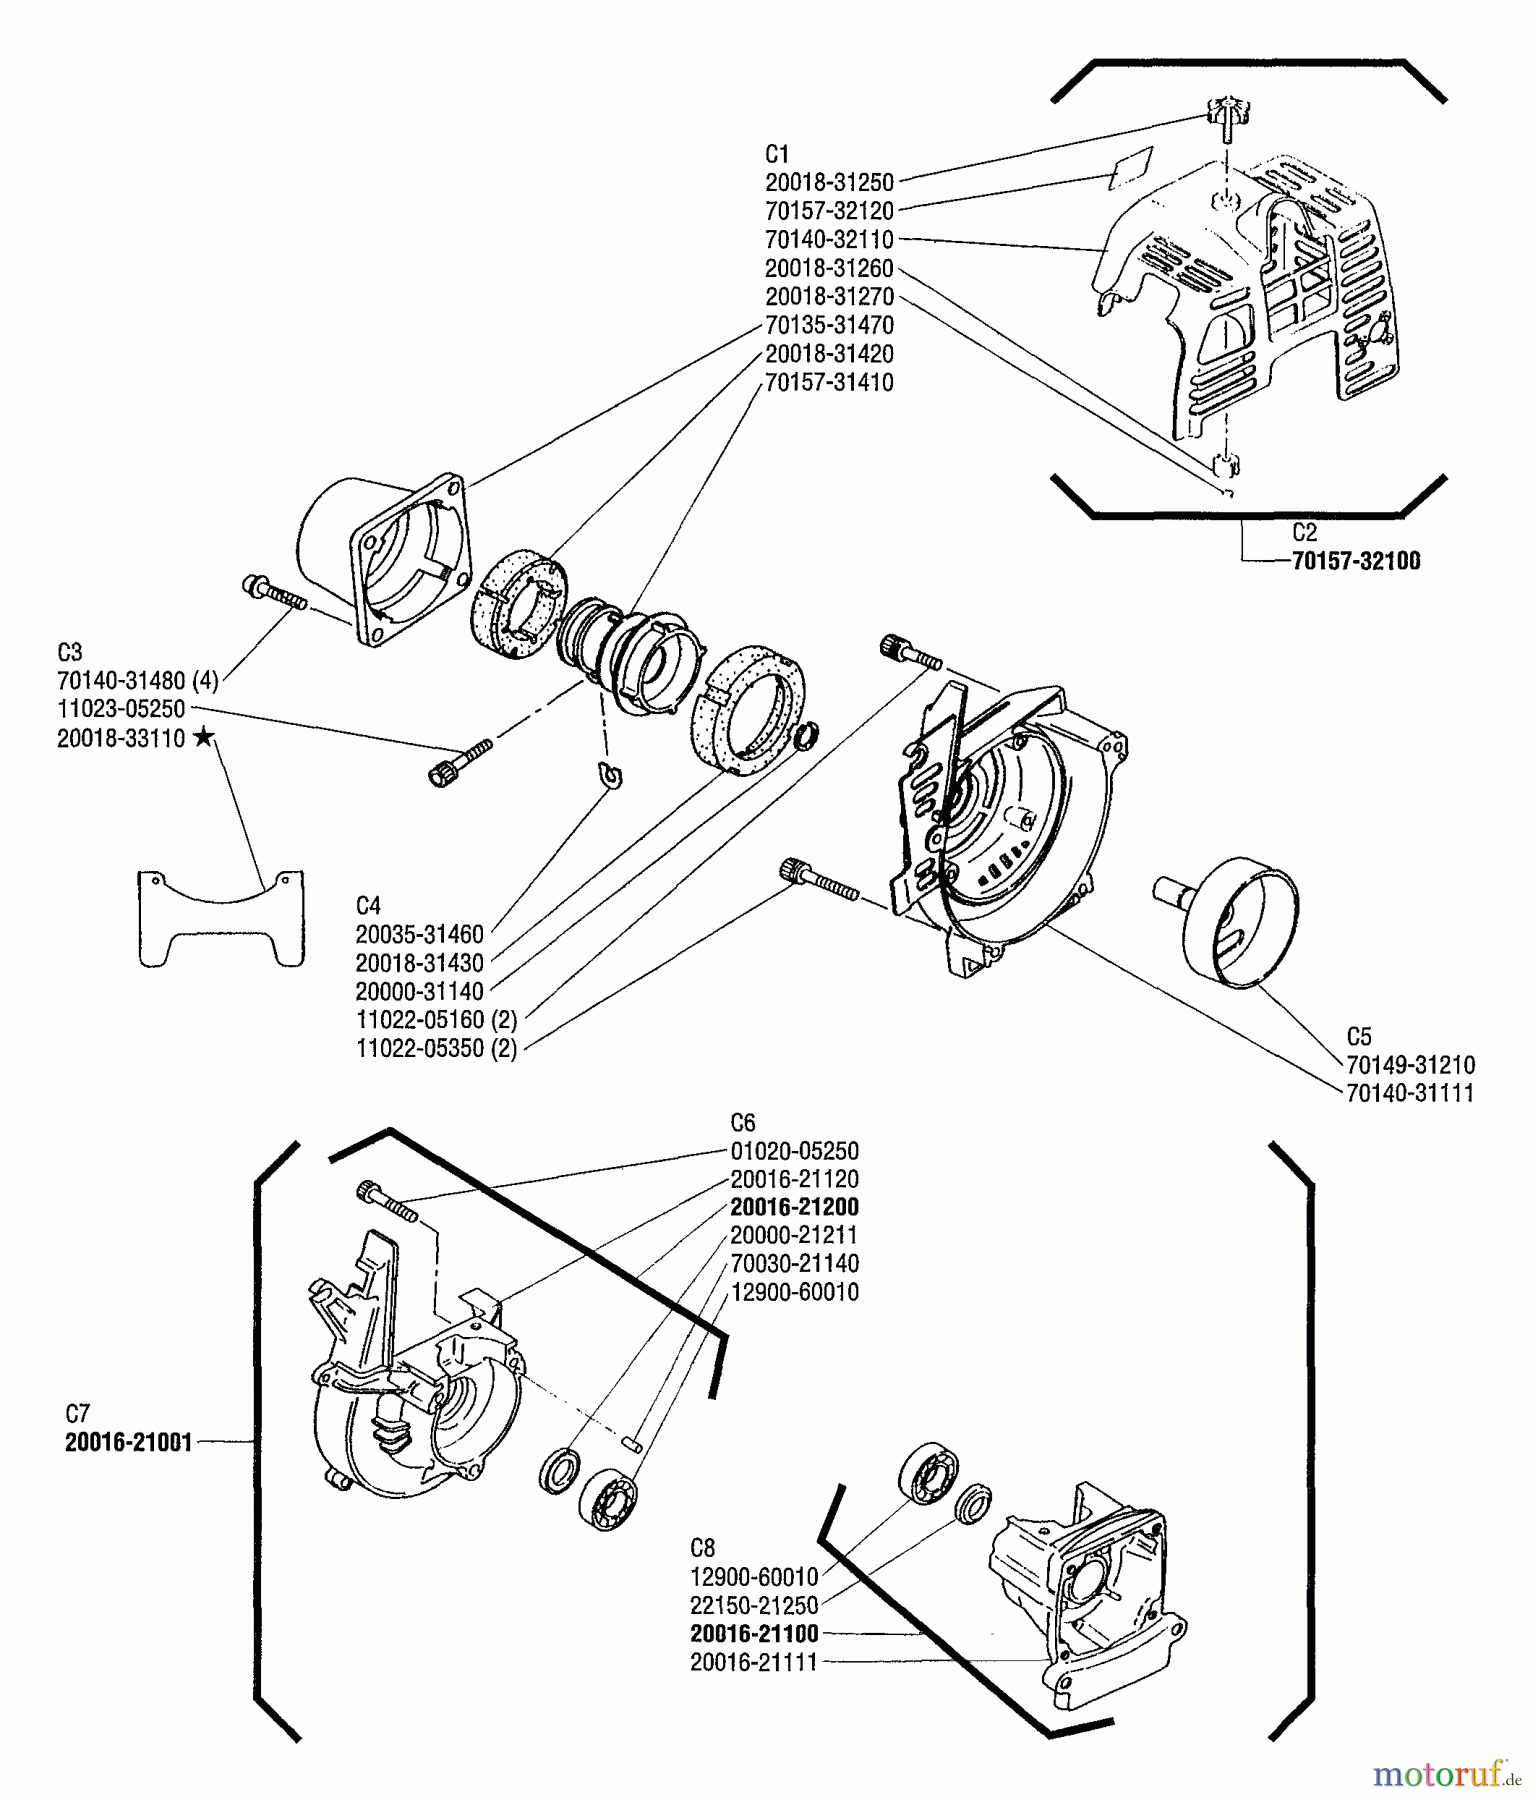  Shindaiwa Trimmer, Faden / Bürste F230 - Shindaiwa String Trimmer Fan Cover, Crank Case S, Crank Case M, Cylinder Cover